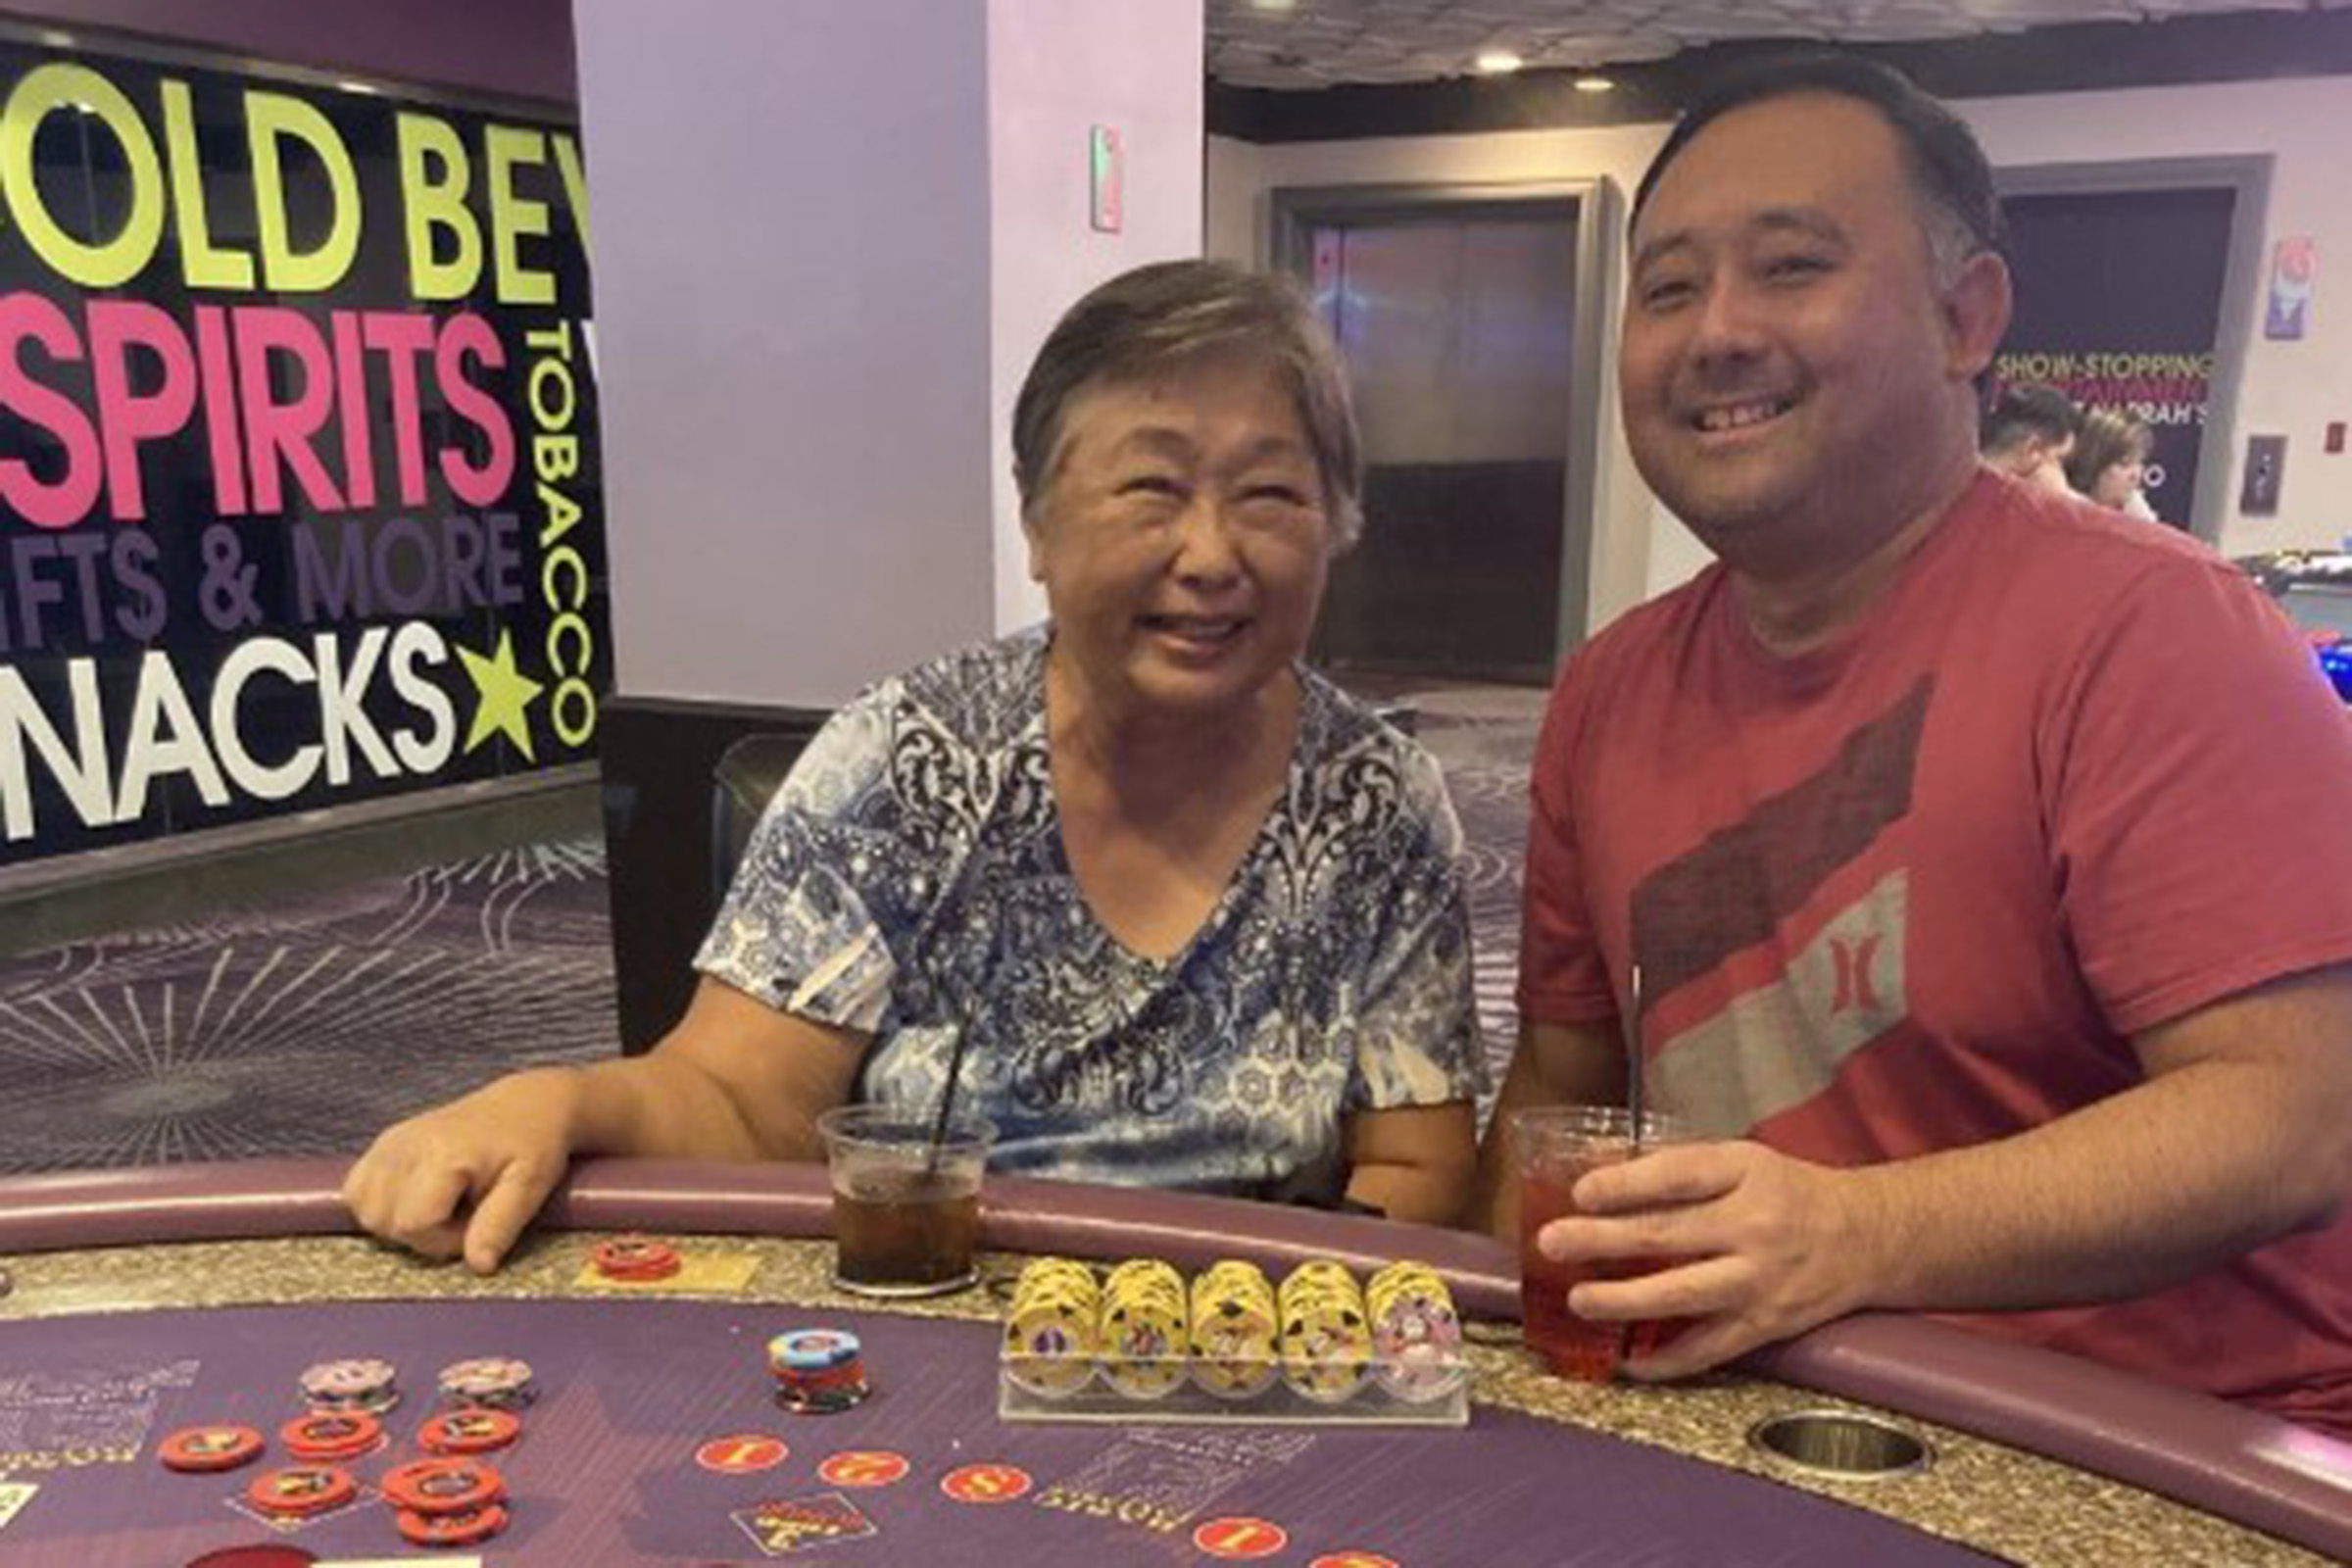 Jackpot permainan meja 5K hits di kasino Las Vegas Strip